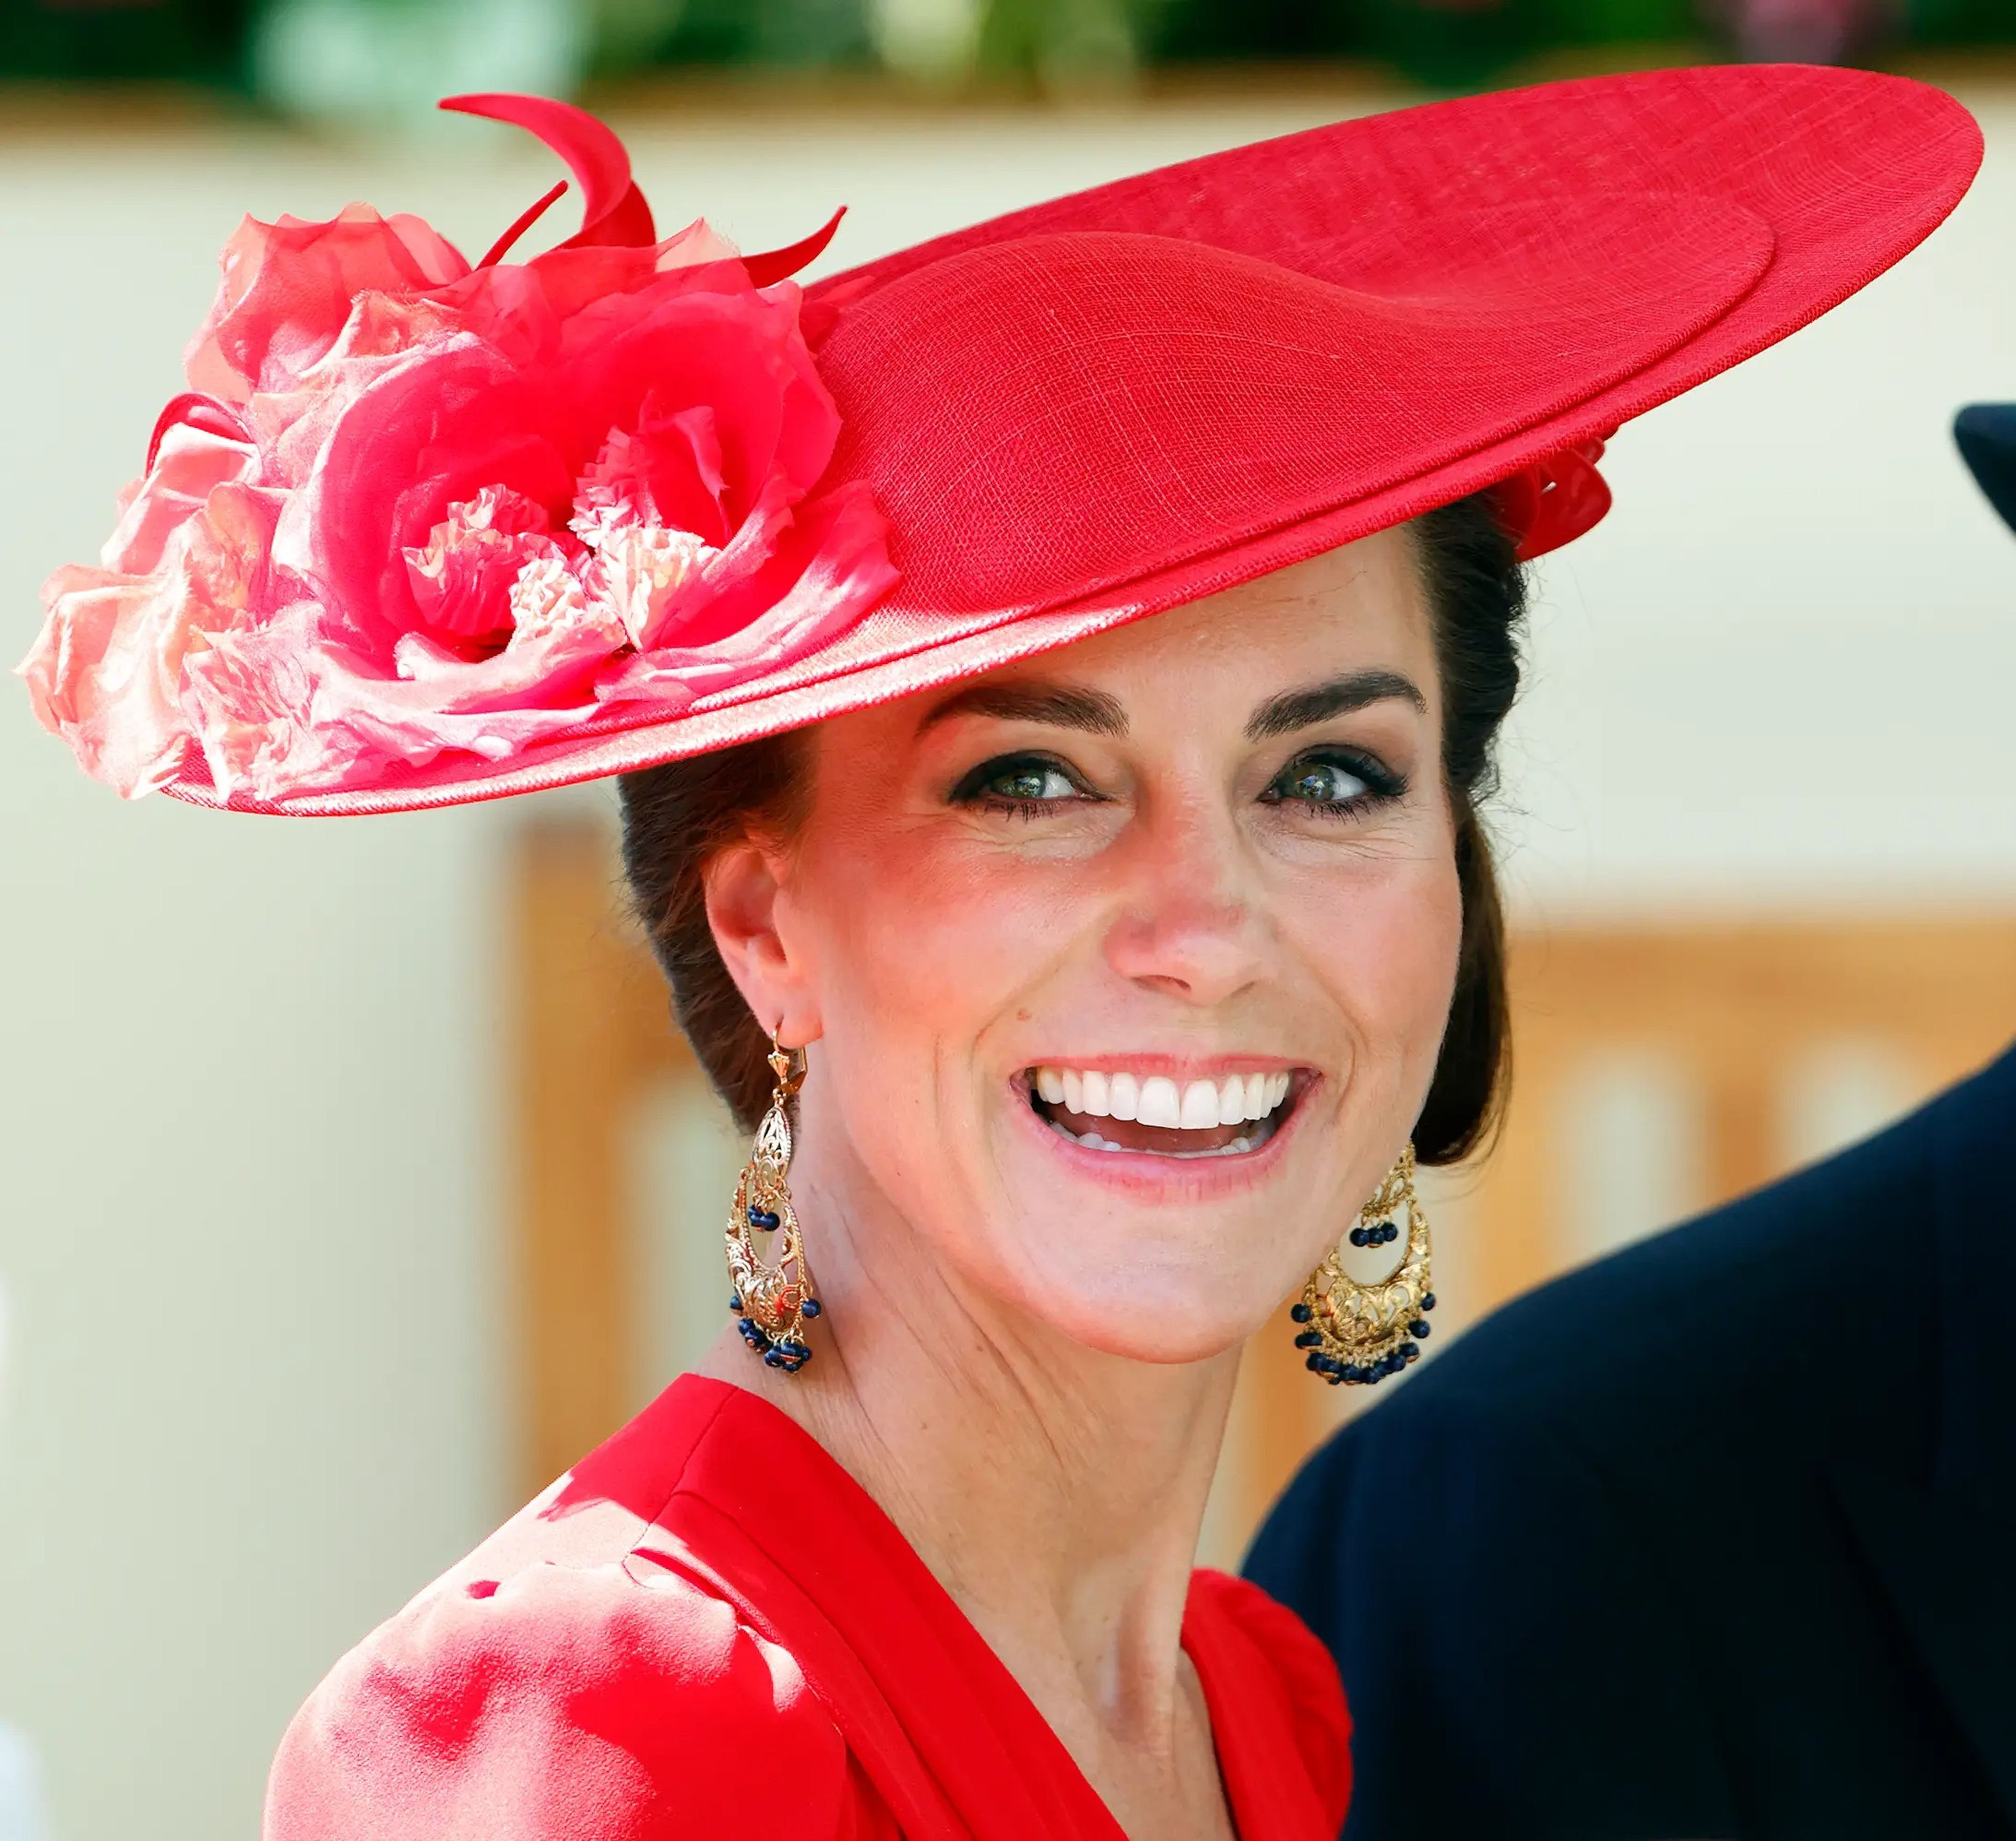 Agan no se cree las teorías conspiratorias sobre Kate Middleton (en la foto).